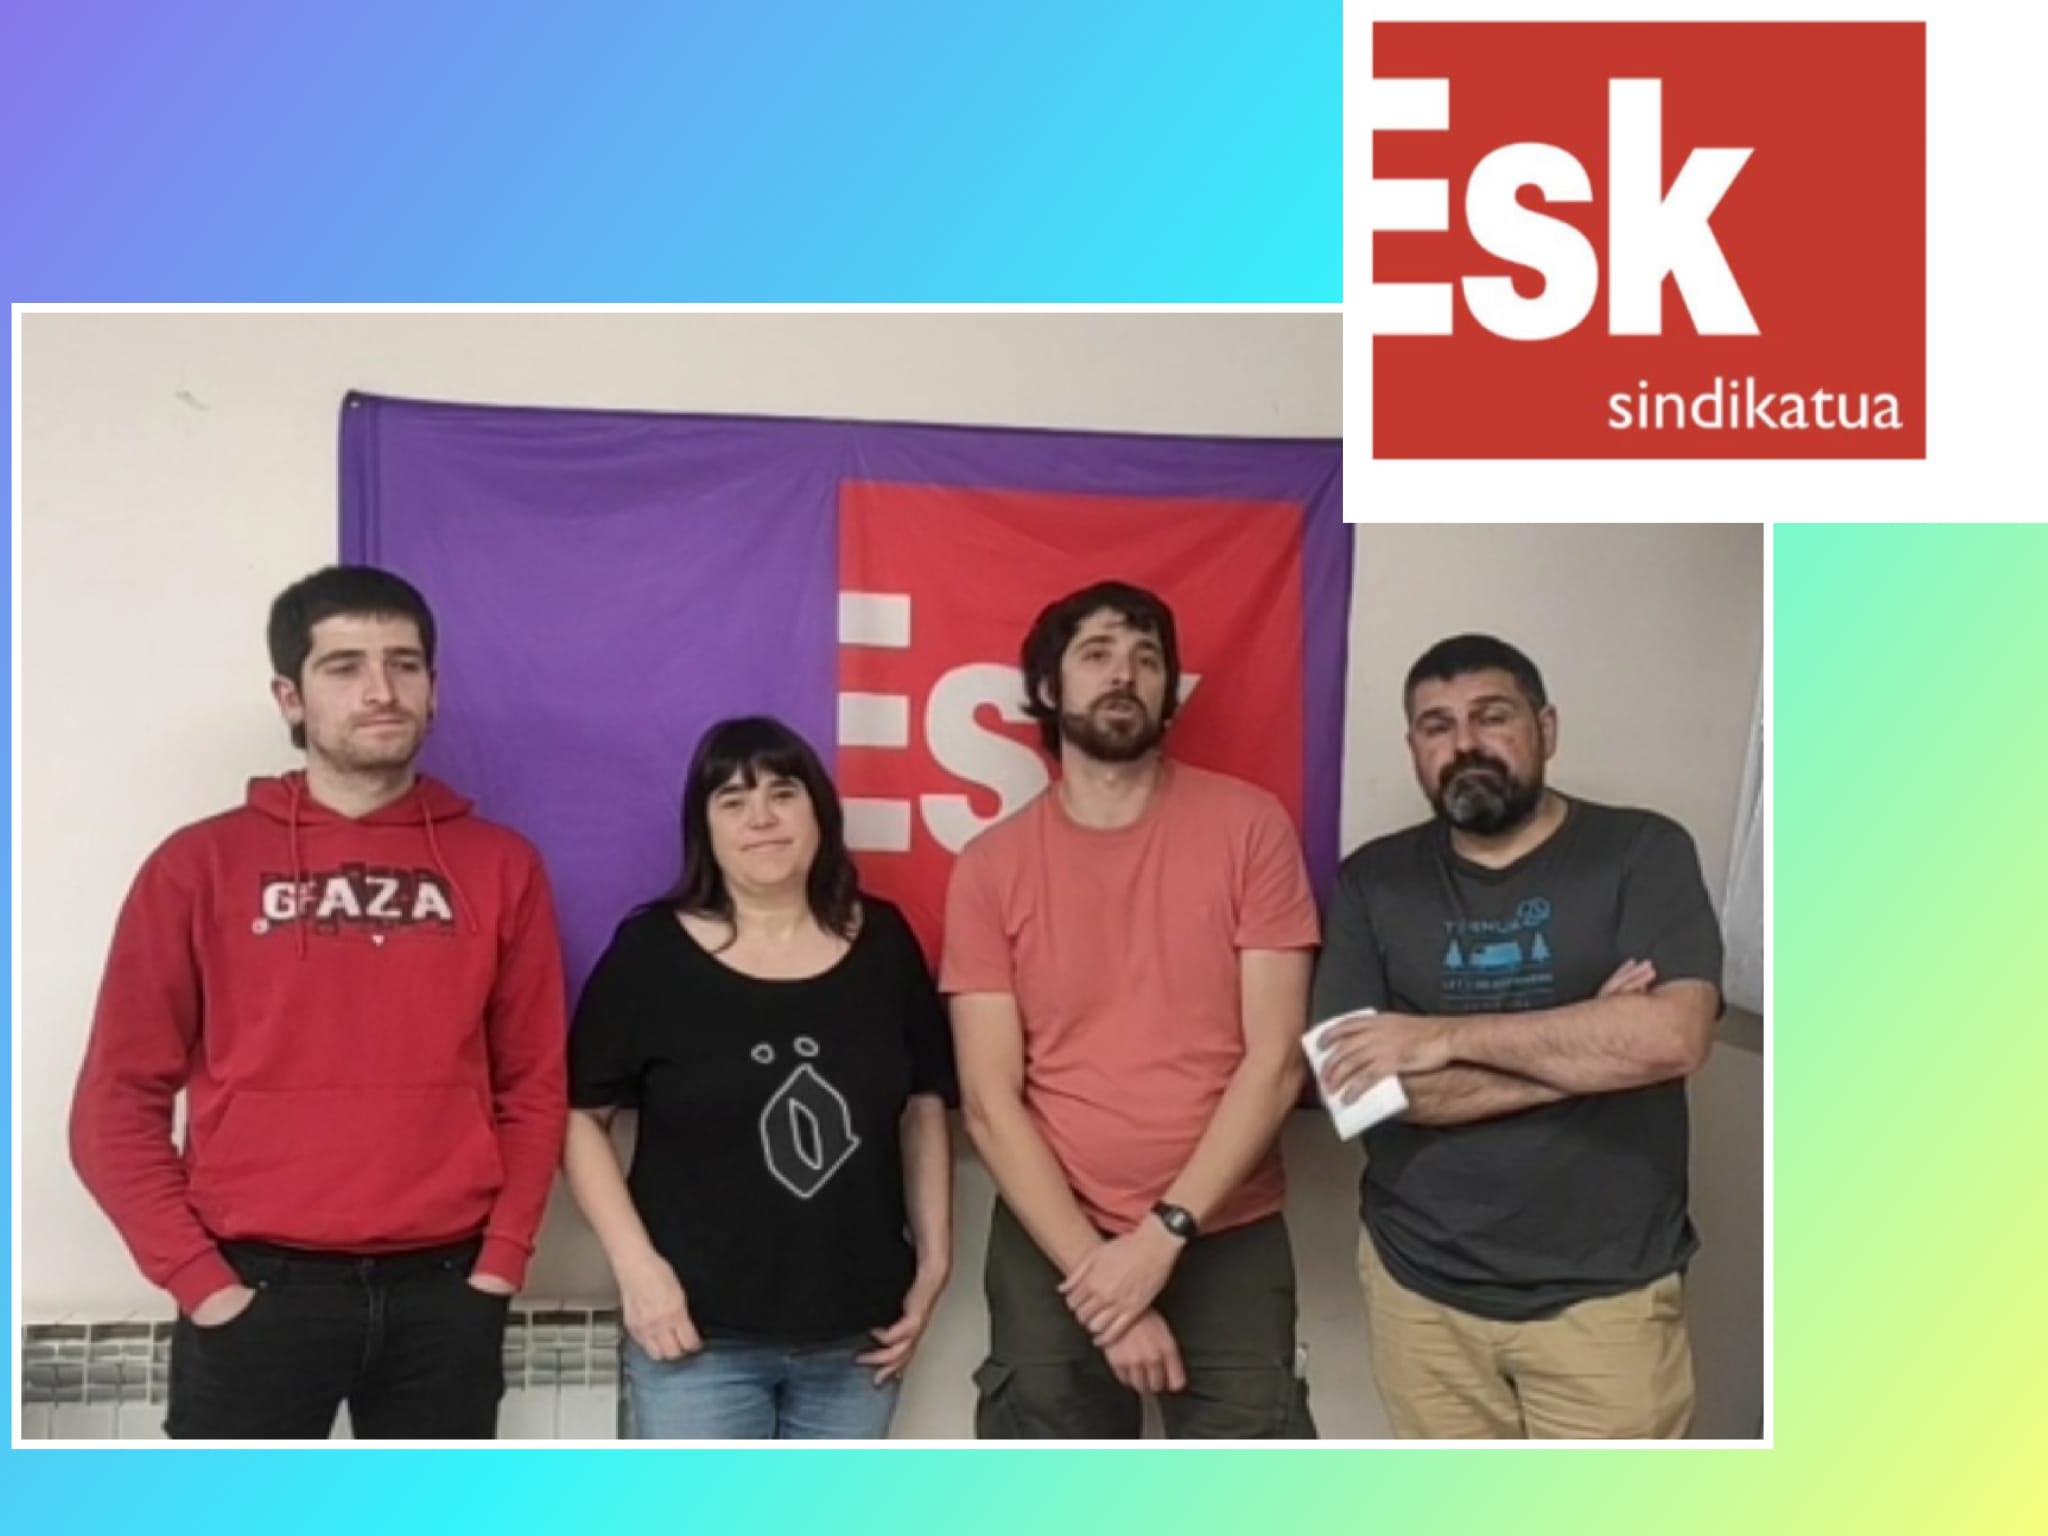 La sección sindical del ESK en Mercedes (Vitoria -Gasteiz, Euskalherria) muestra su apoyo y solidaridad a nuestra sección sindical en Ford así como a la Plantilla de Ford Almussafes.